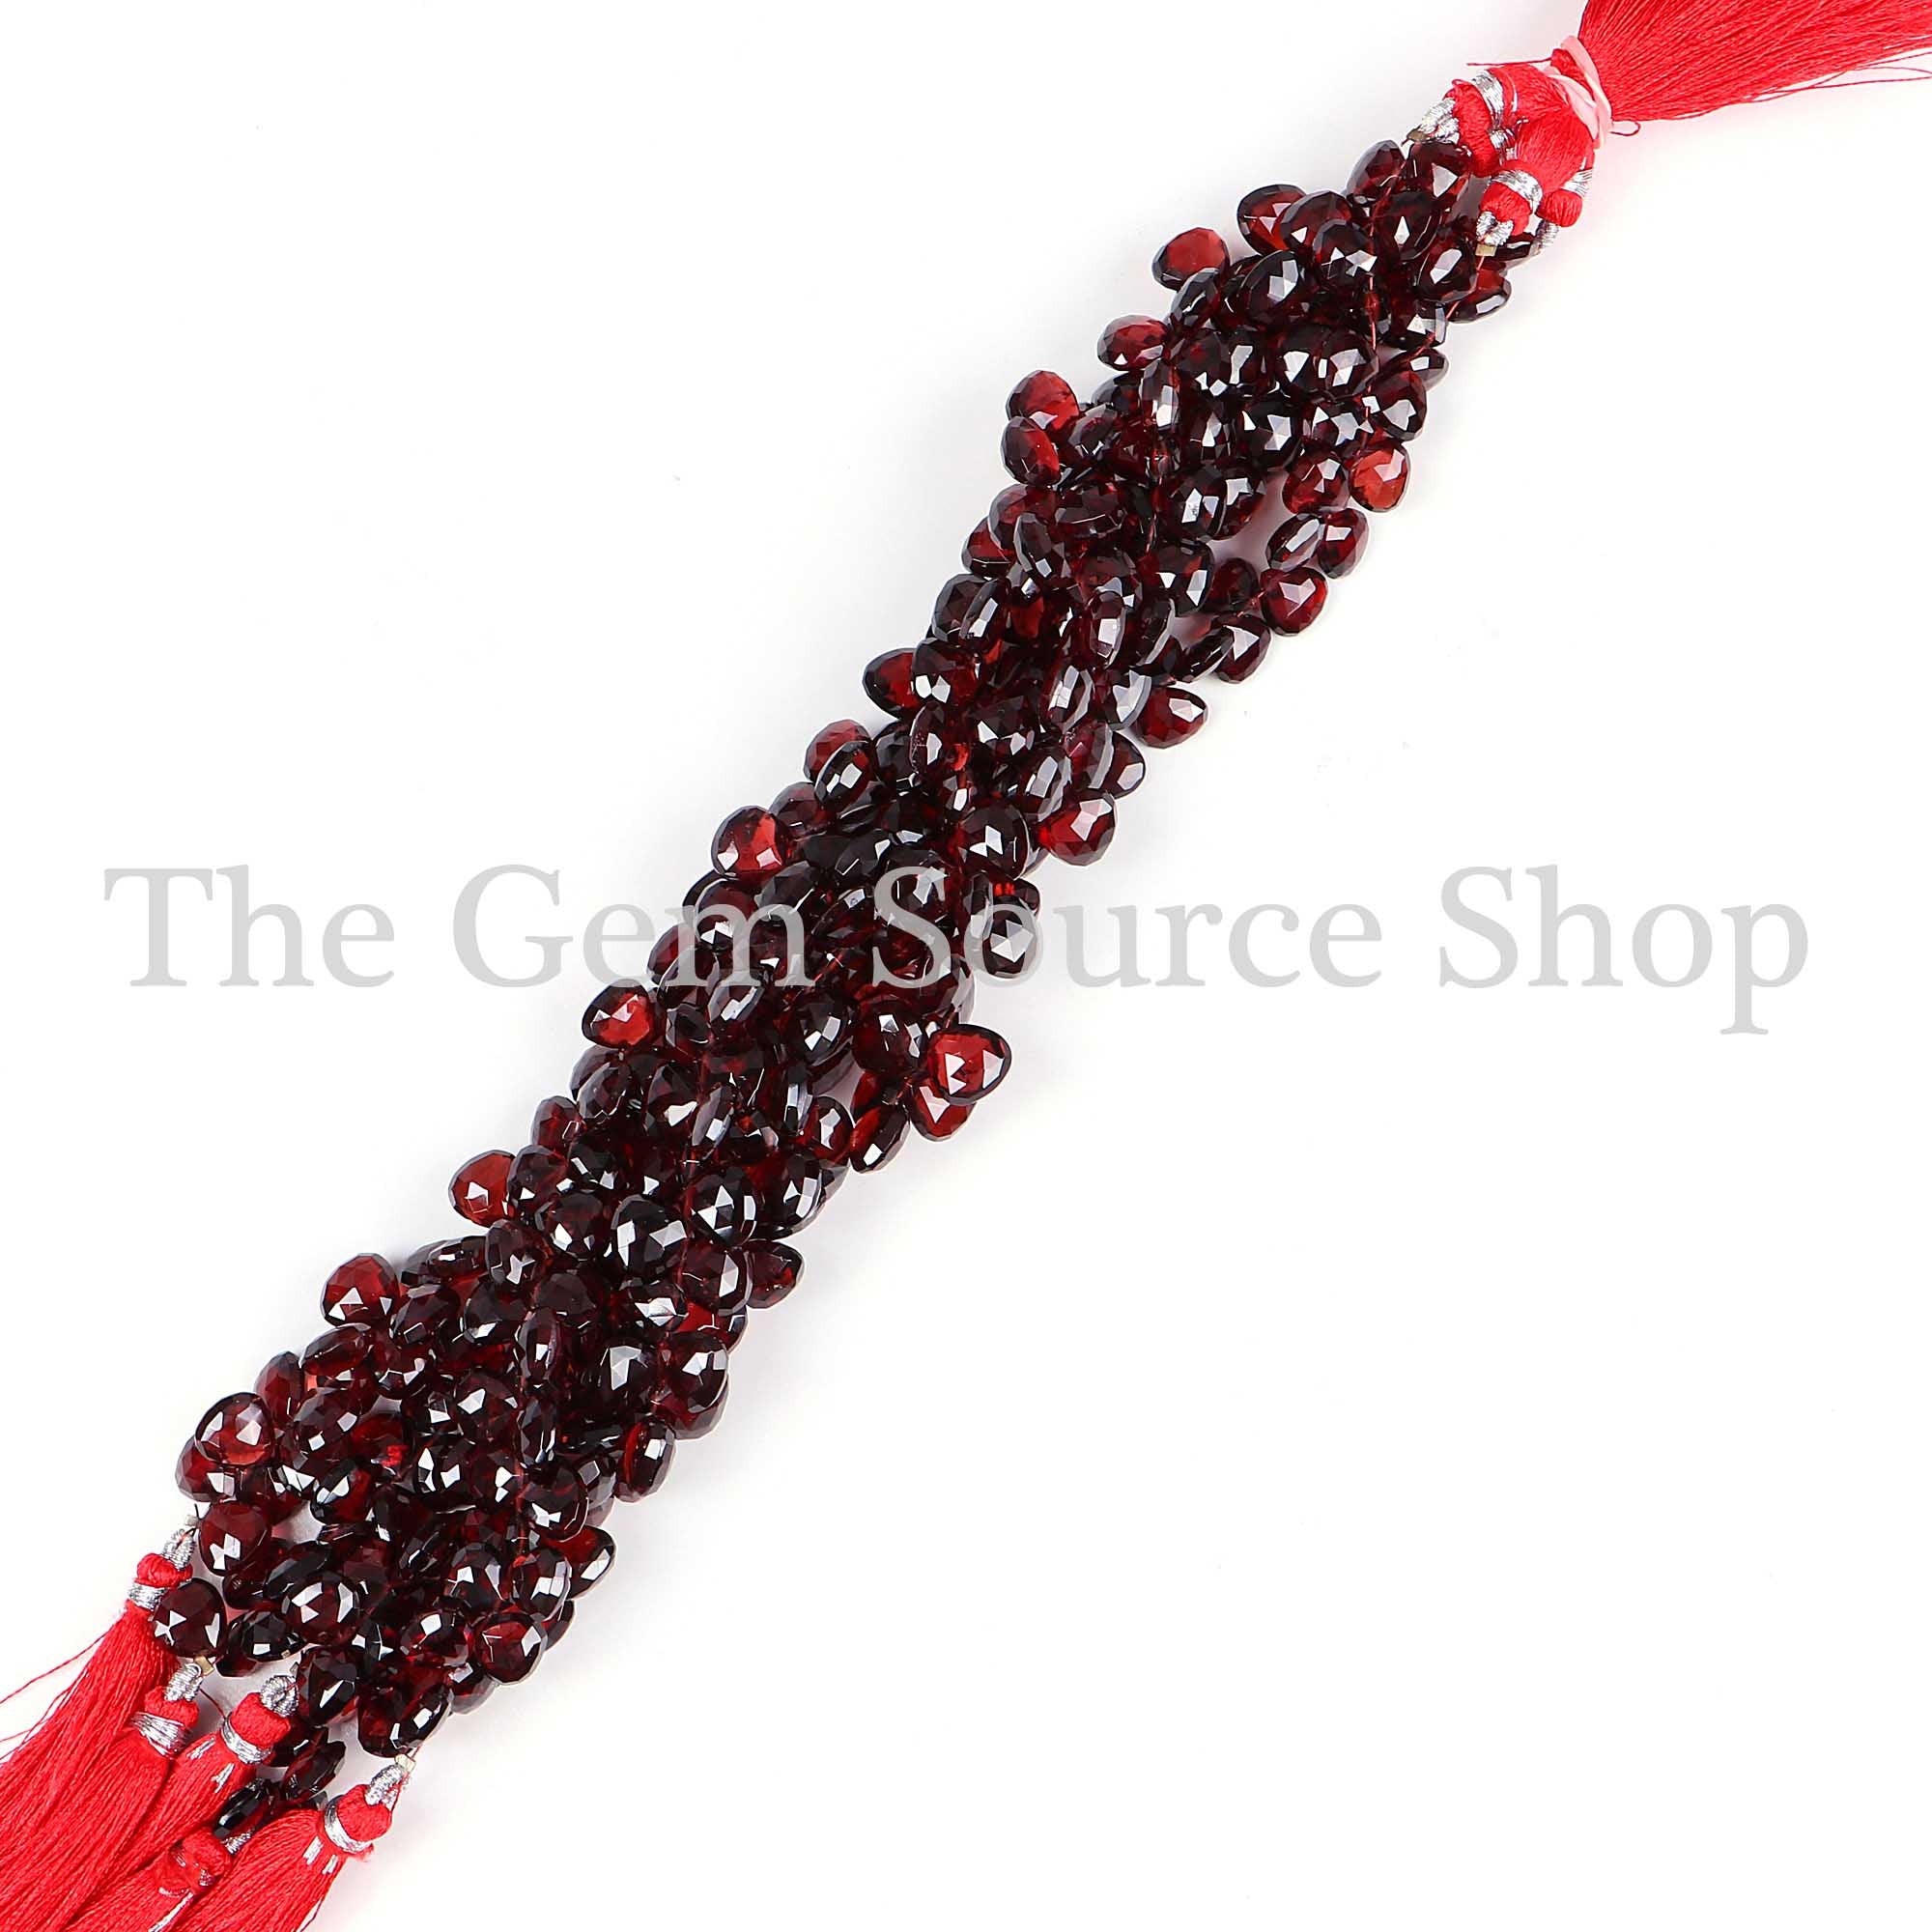 Mozambique Garnet Faceted Beads, Garnet Heart Shape Beads, Garnet Gemstone Beads